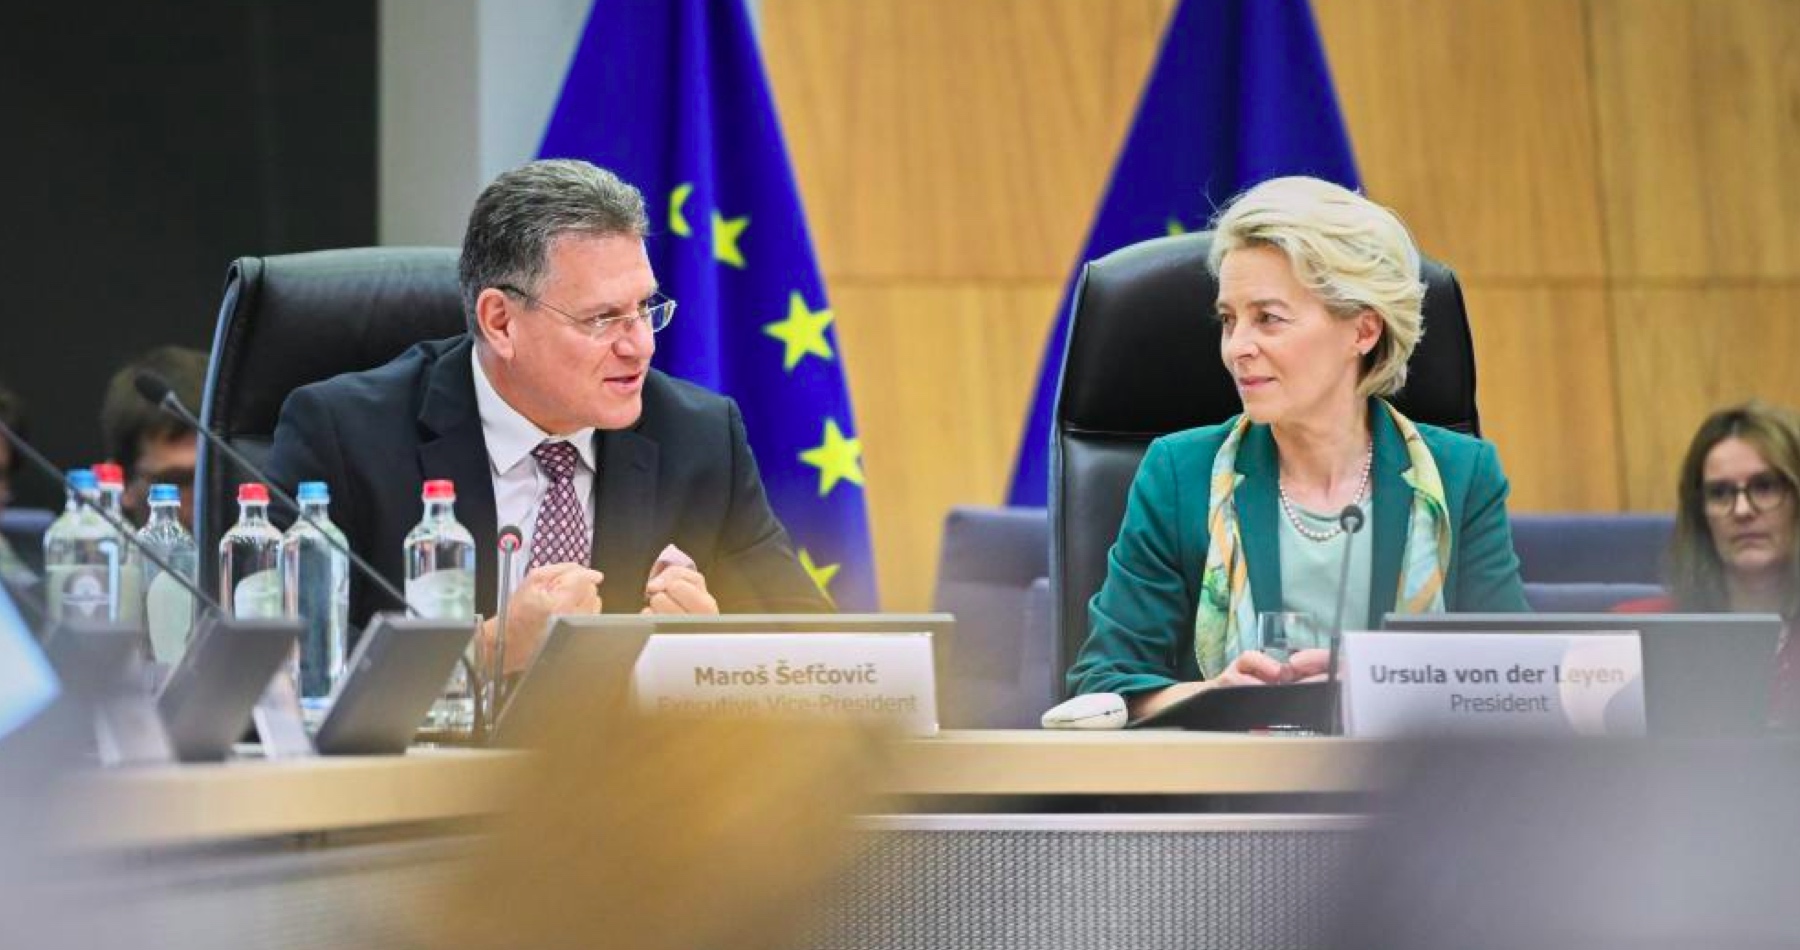 Chmelár: Haló, pán eurokomisár Šefčovič? Ako sa máte pán podpredseda Európskej komisie zodpovedný za koordináciu energetickej transformácie, za zlepšenie prístupu ku kritickým surovinám, za riadenie Európskej zelenej dohody. Čo v súvislosti so zastavením dodávok ruskej ropy na Slovensko robíte? Nacvičujete opakovanie pozdravu „Všetci sme Ukrajinci“?